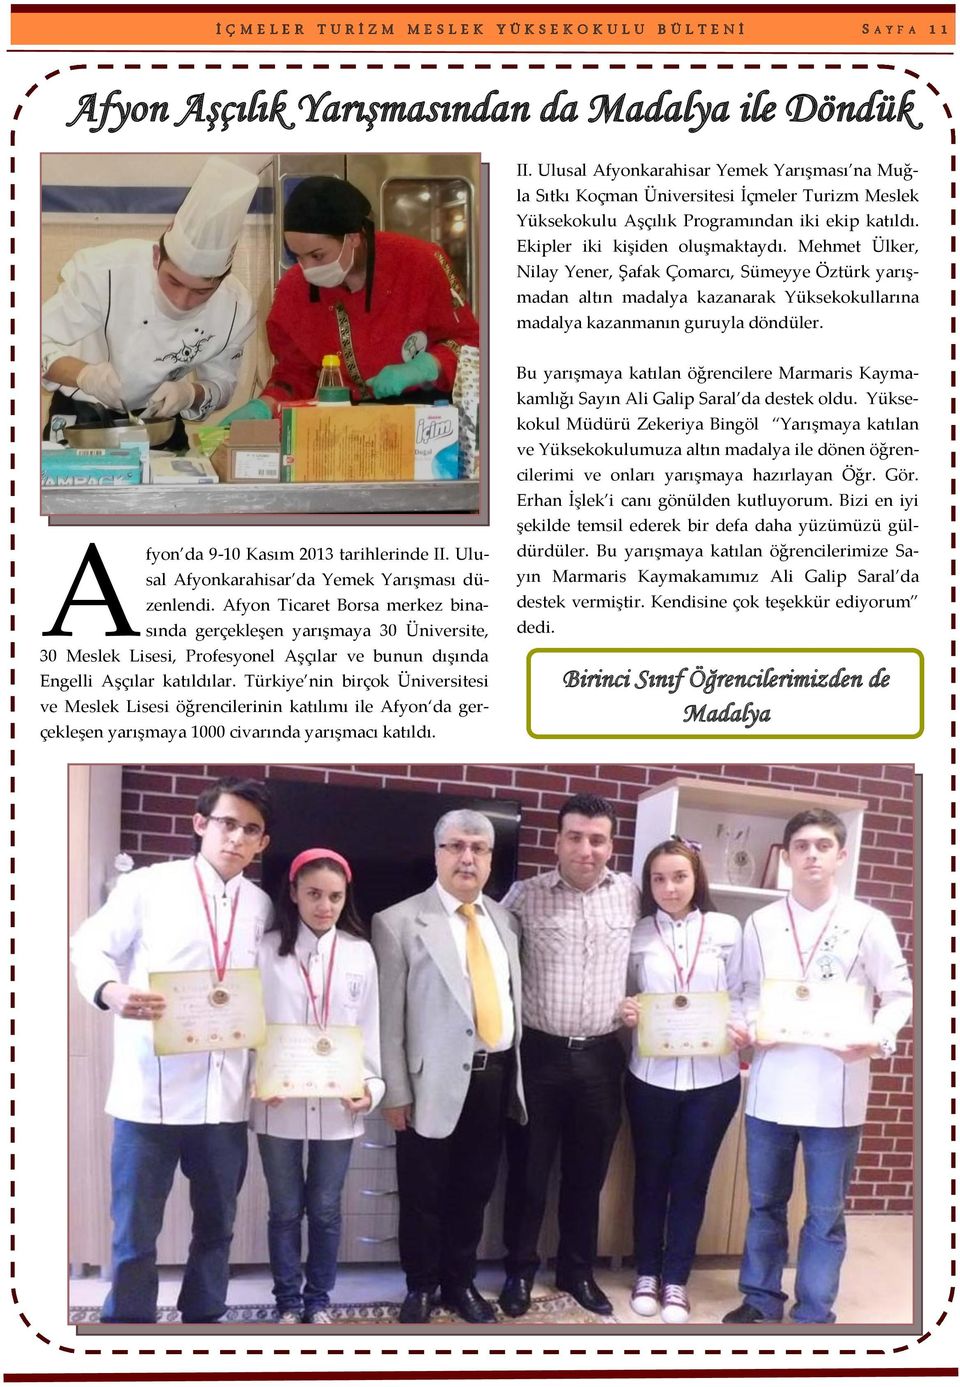 Mehmet Ülker, Nilay Yener, Şafak Çomarcı, Sümeyye Öztürk yarışmadan altın madalya kazanarak Yüksekokullarına madalya kazanmanın guruyla döndüler. A fyon da 9-10 Kasım 2013 tarihlerinde II.